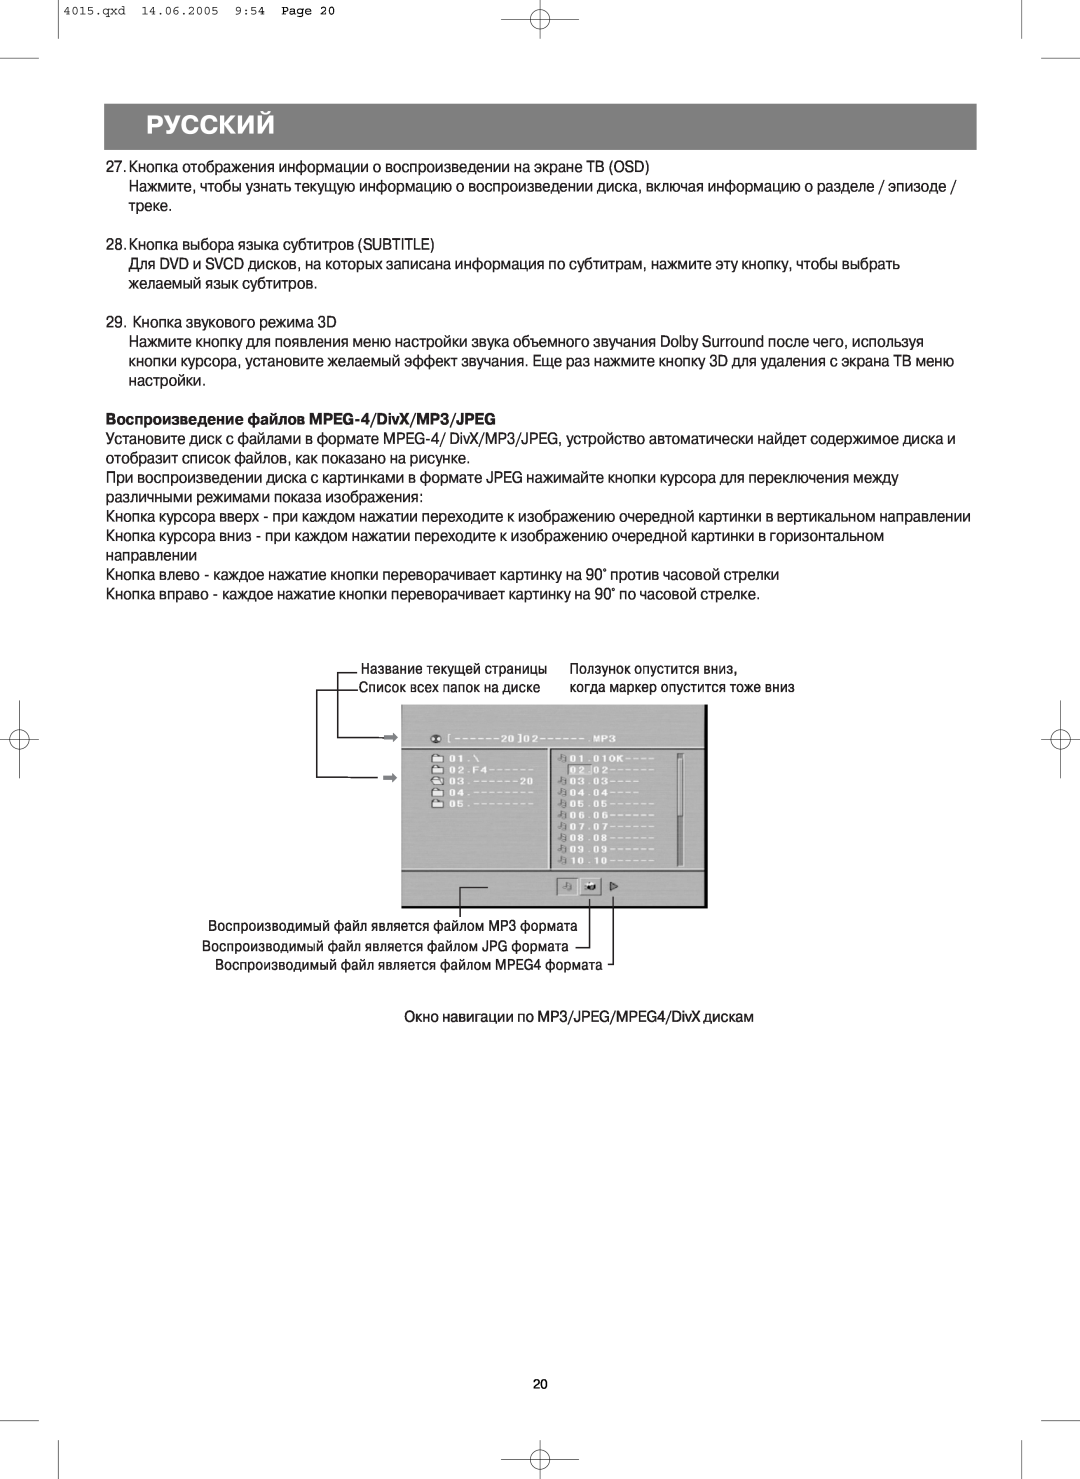 LG Electronics VT 4015 instruction manual Русский, Воспроизведение файлов MPEG 